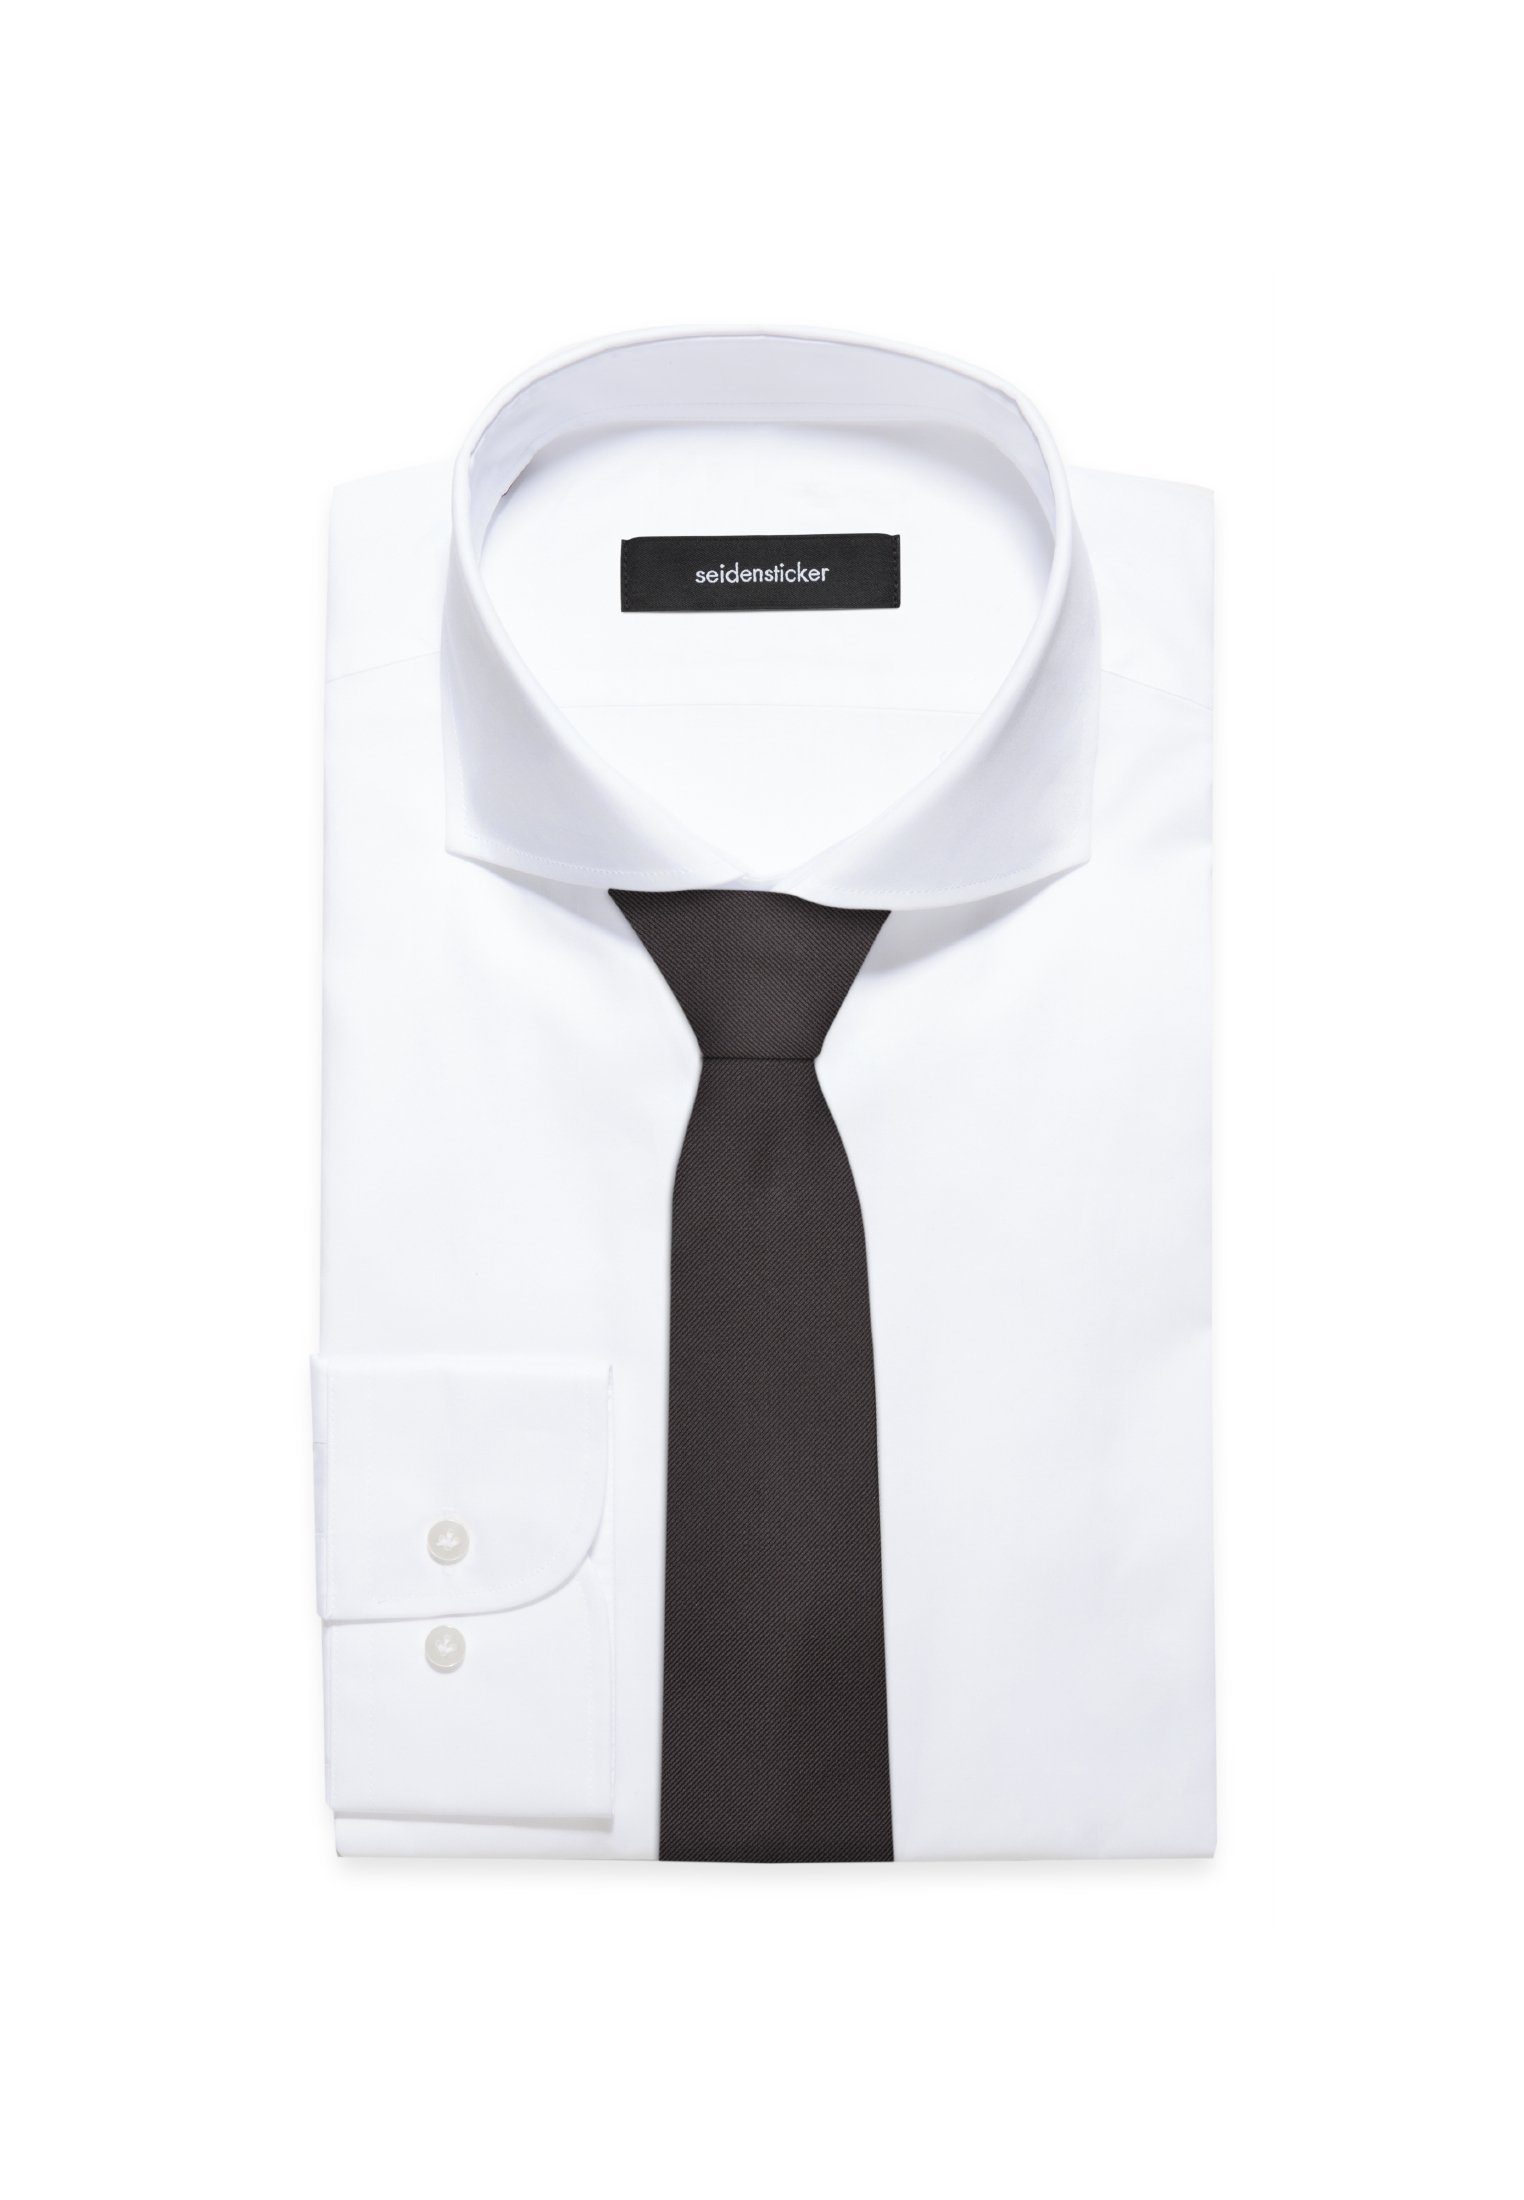 Schwarze Breit (7cm) Krawatte seidensticker Uni Grau Rose